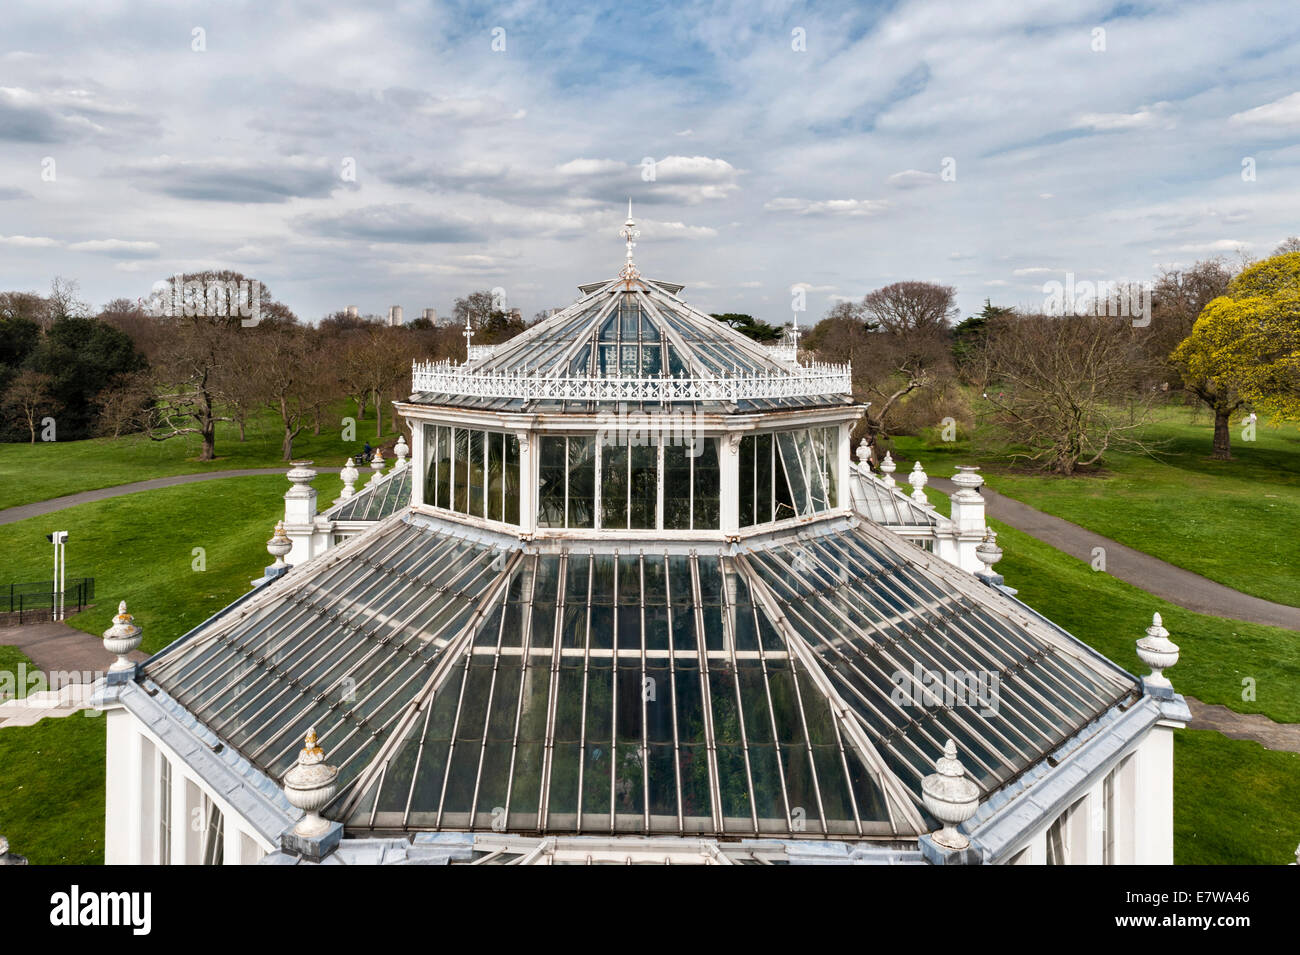 The Royal Botanic Gardens, Kew, Londres, Royaume-Uni. Le toit de la maison Temperate en fer forgé et verre, construite par Decimus Burton, qui a ouvert ses portes en 1863 Banque D'Images